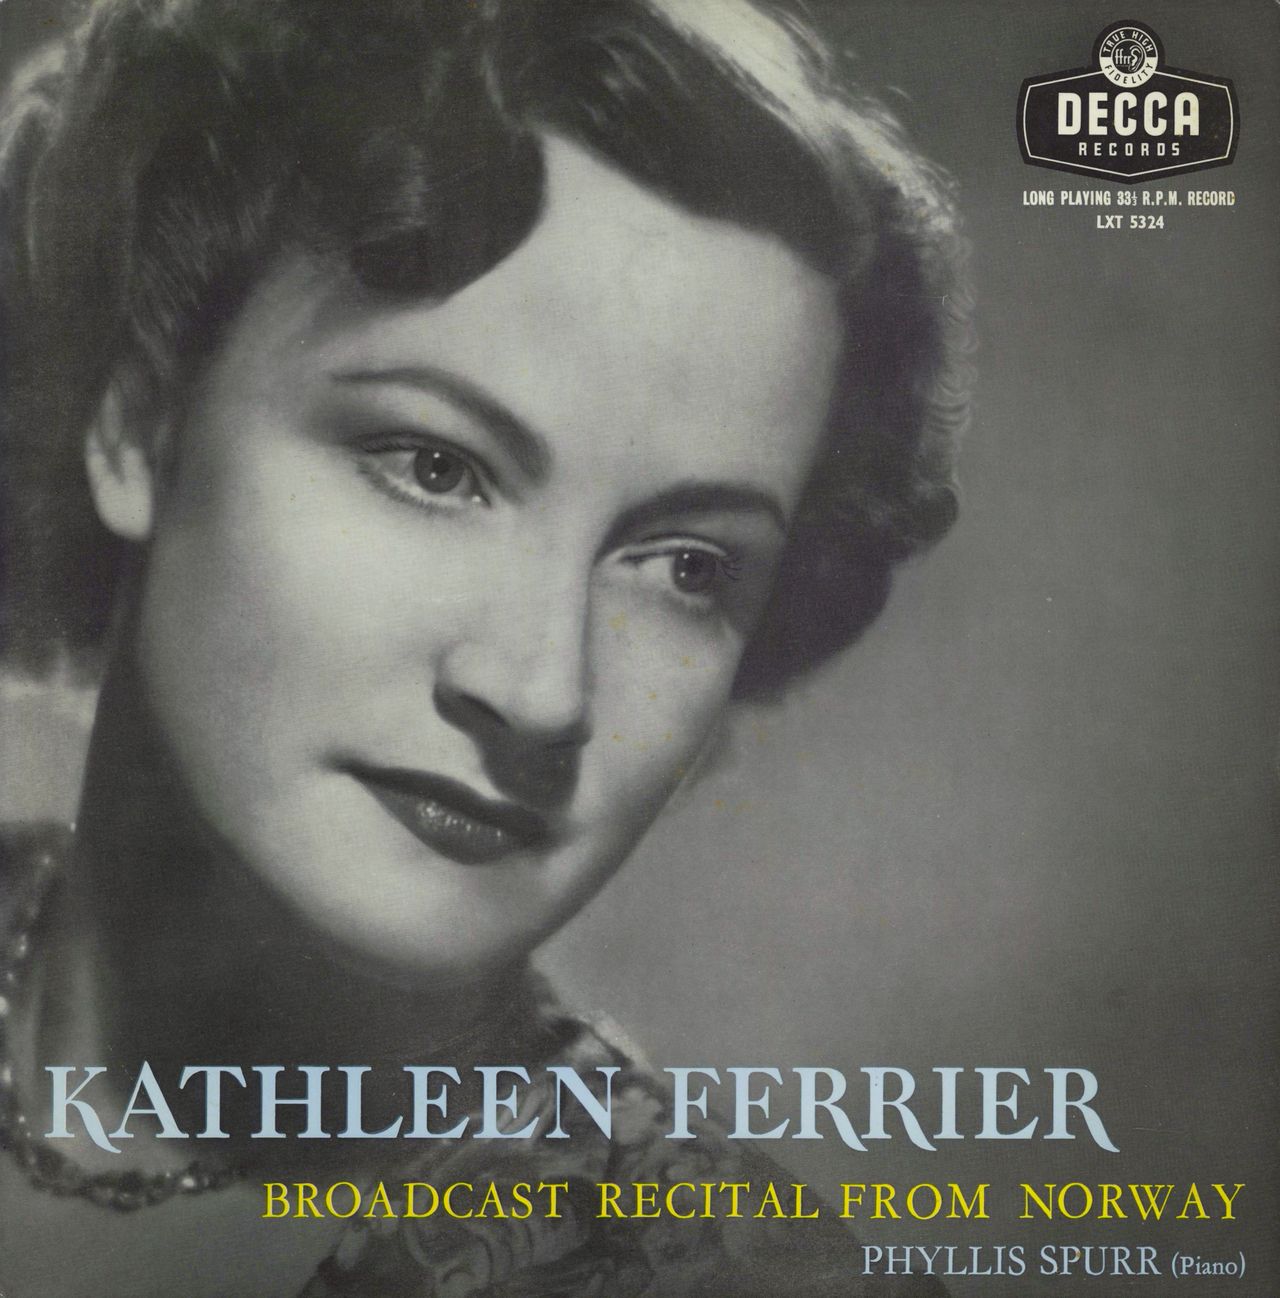 Kathleen Ferrier Broadcast Recital From Norway UK vinyl LP album (LP record) LXT5324